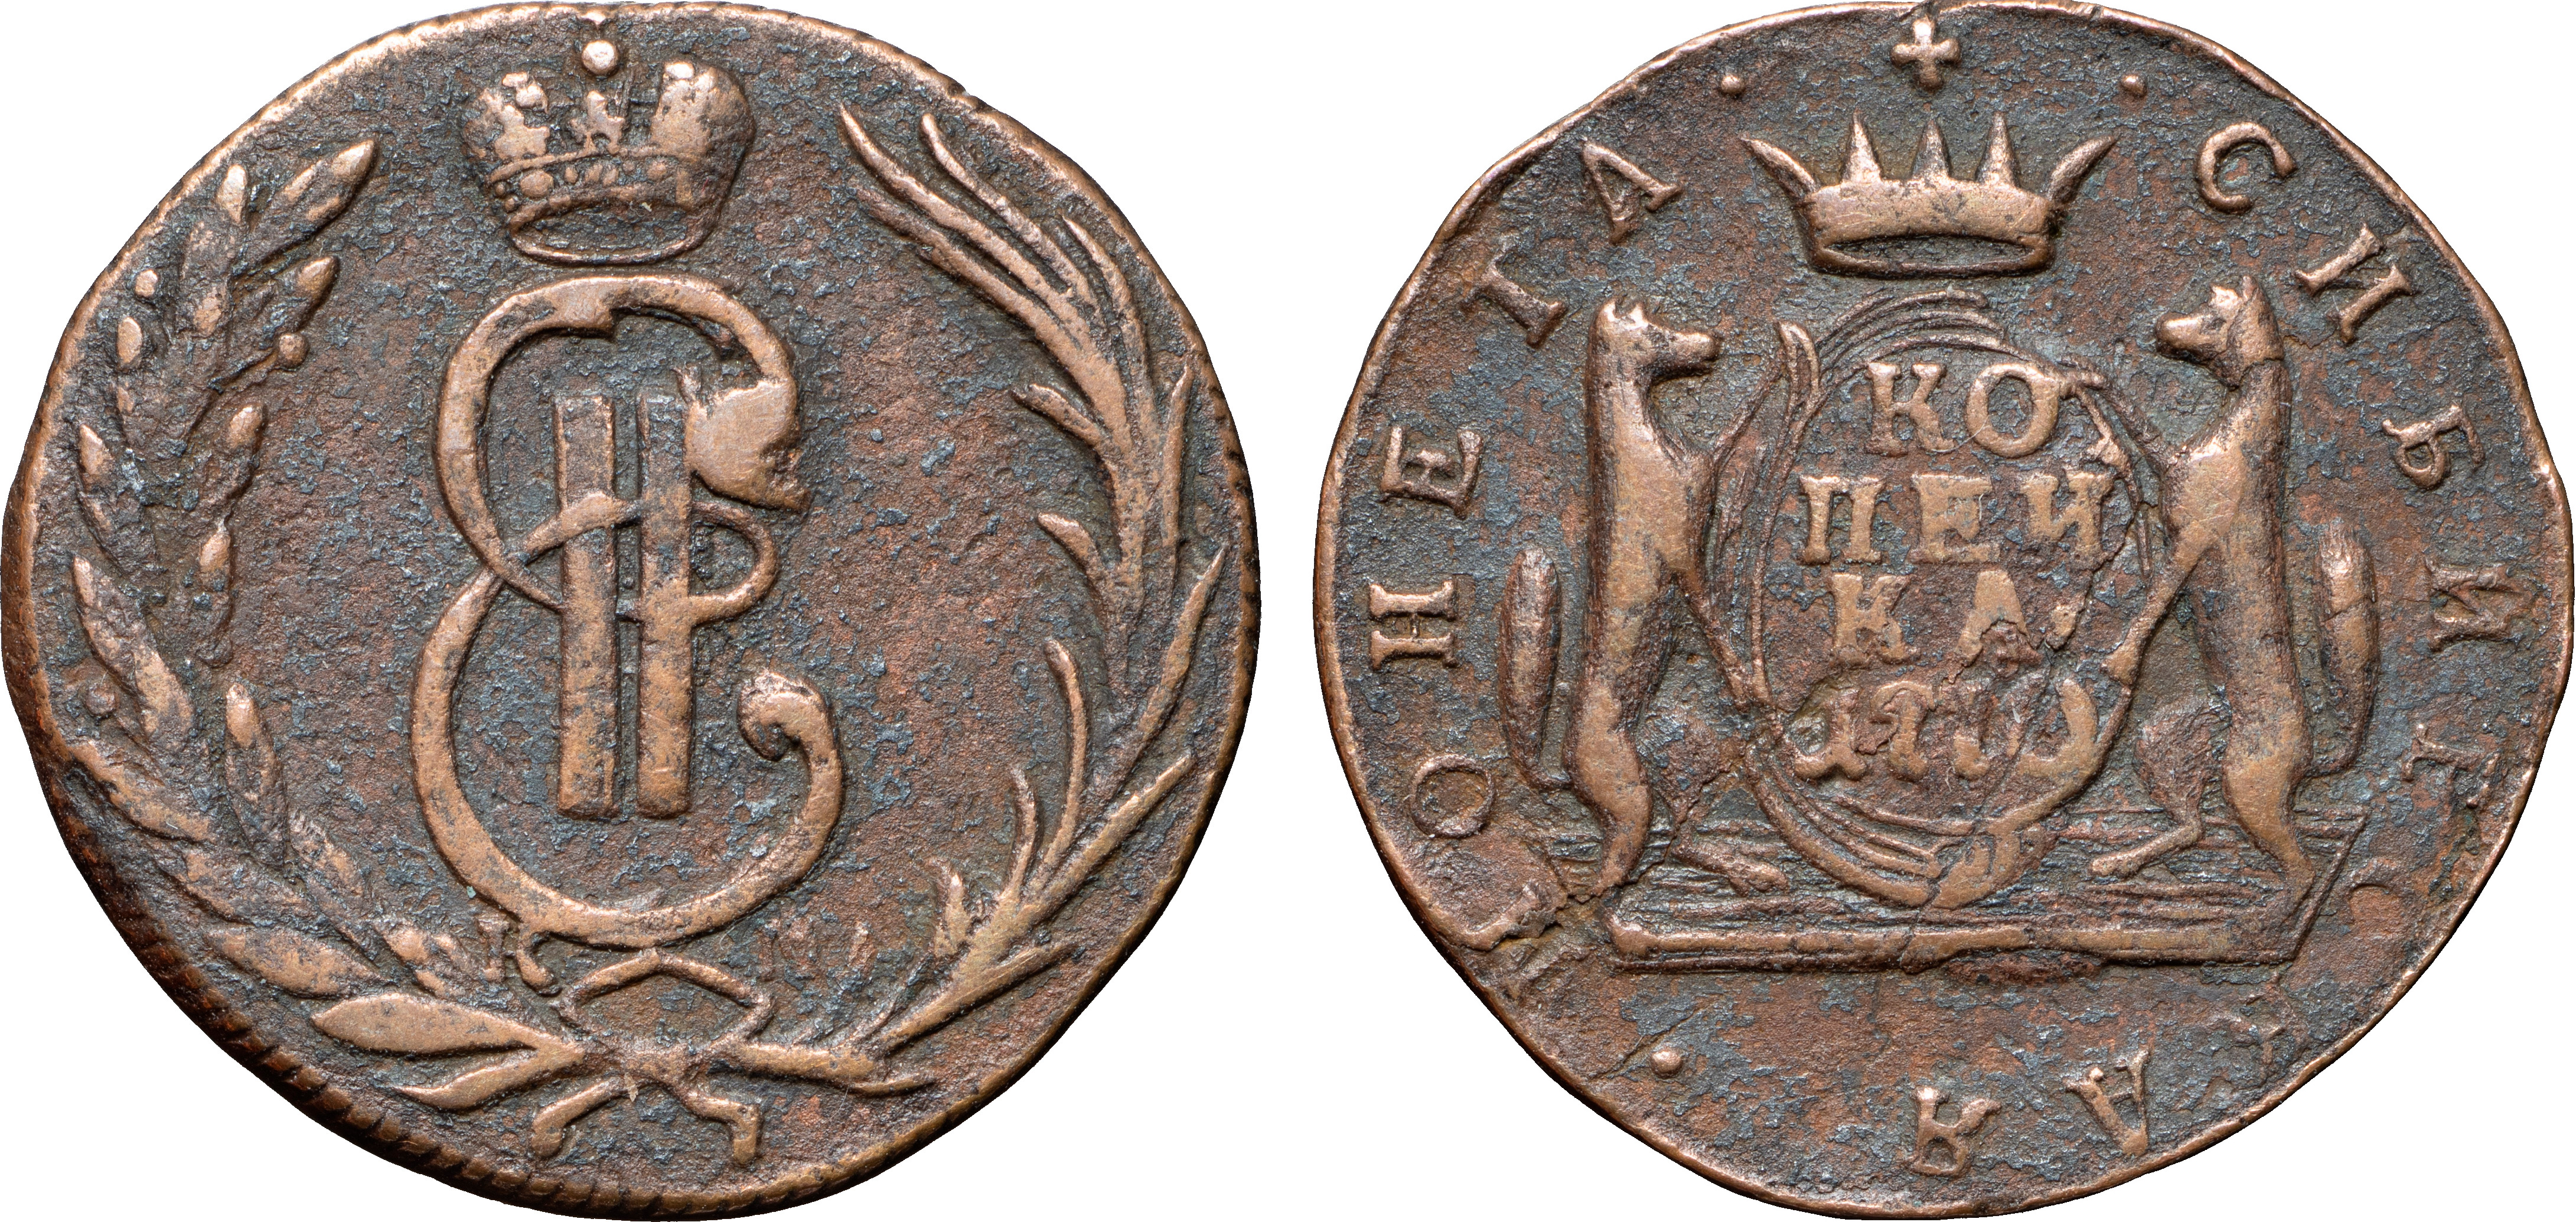 1 Копейка 1770 год. КМ (Сузунский монетный двор)